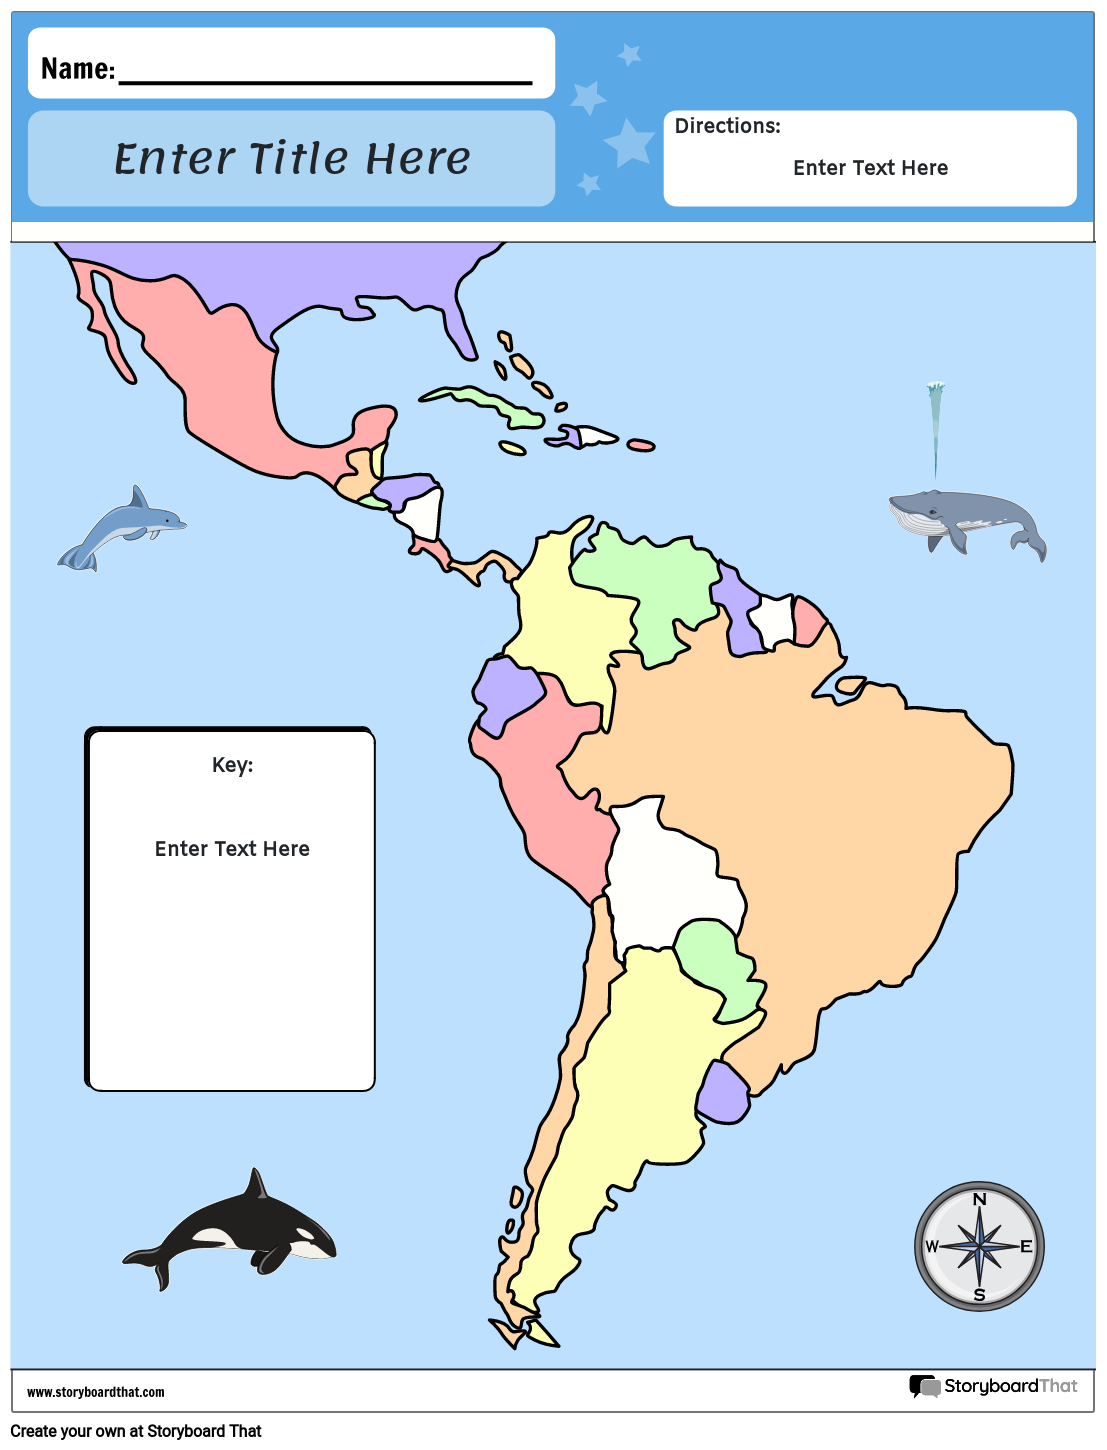 Zemljevid Južne Amerike